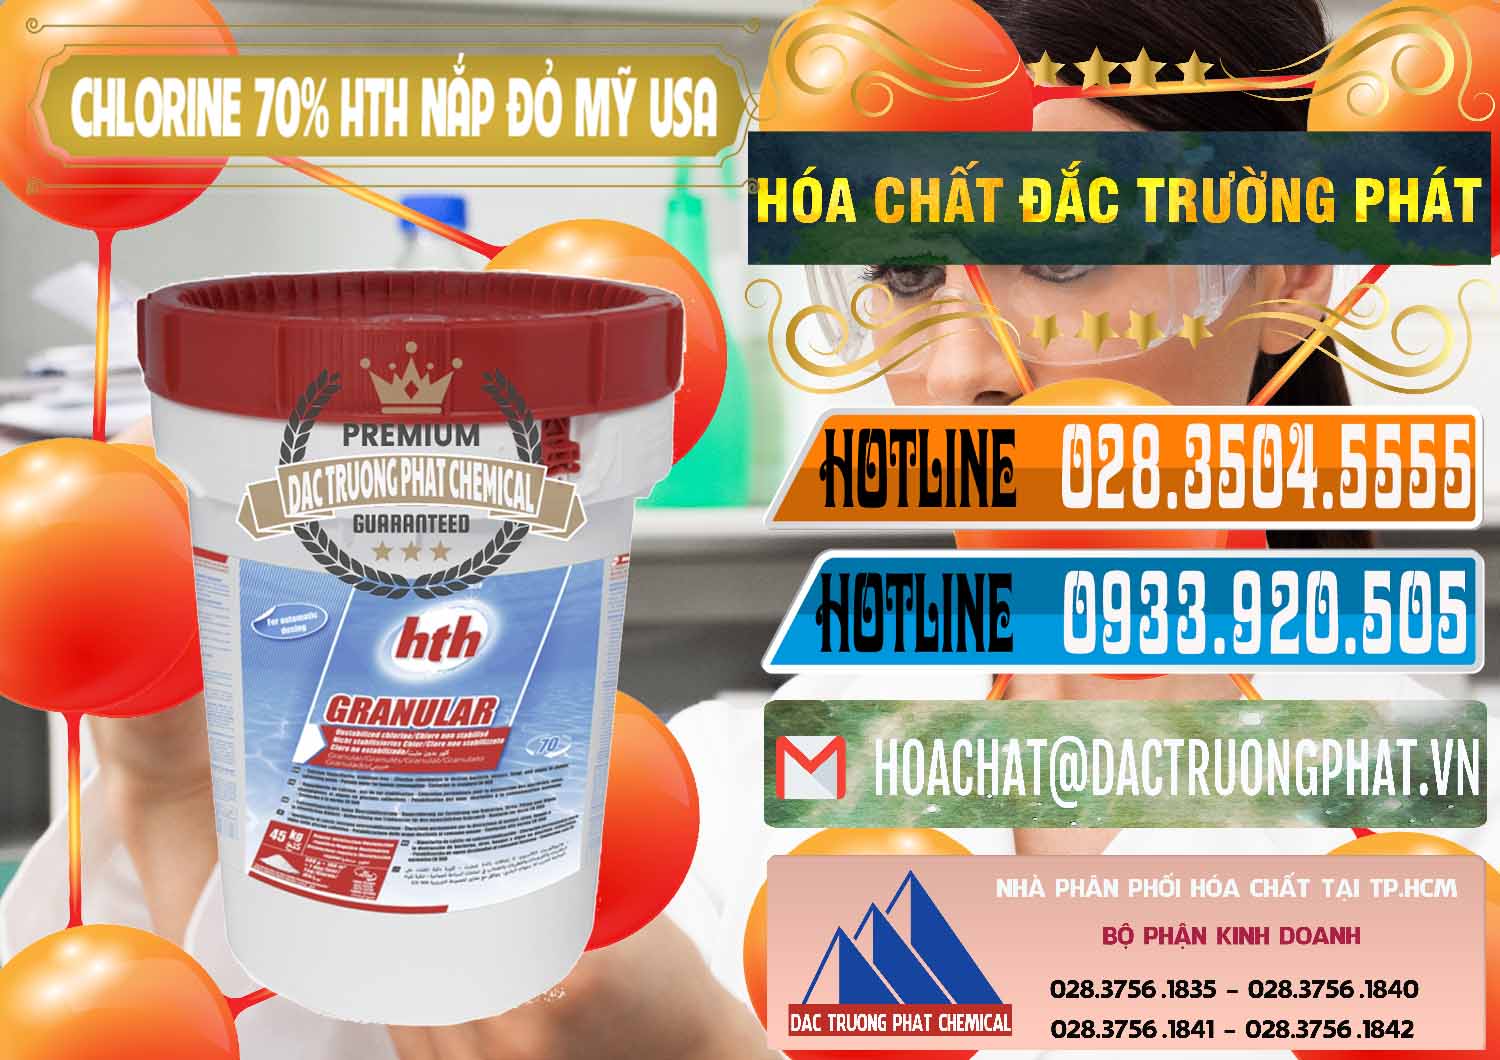 Đơn vị bán ( cung cấp ) Clorin – Chlorine 70% HTH Nắp Đỏ Mỹ Usa - 0244 - Nơi chuyên kinh doanh ( phân phối ) hóa chất tại TP.HCM - stmp.net